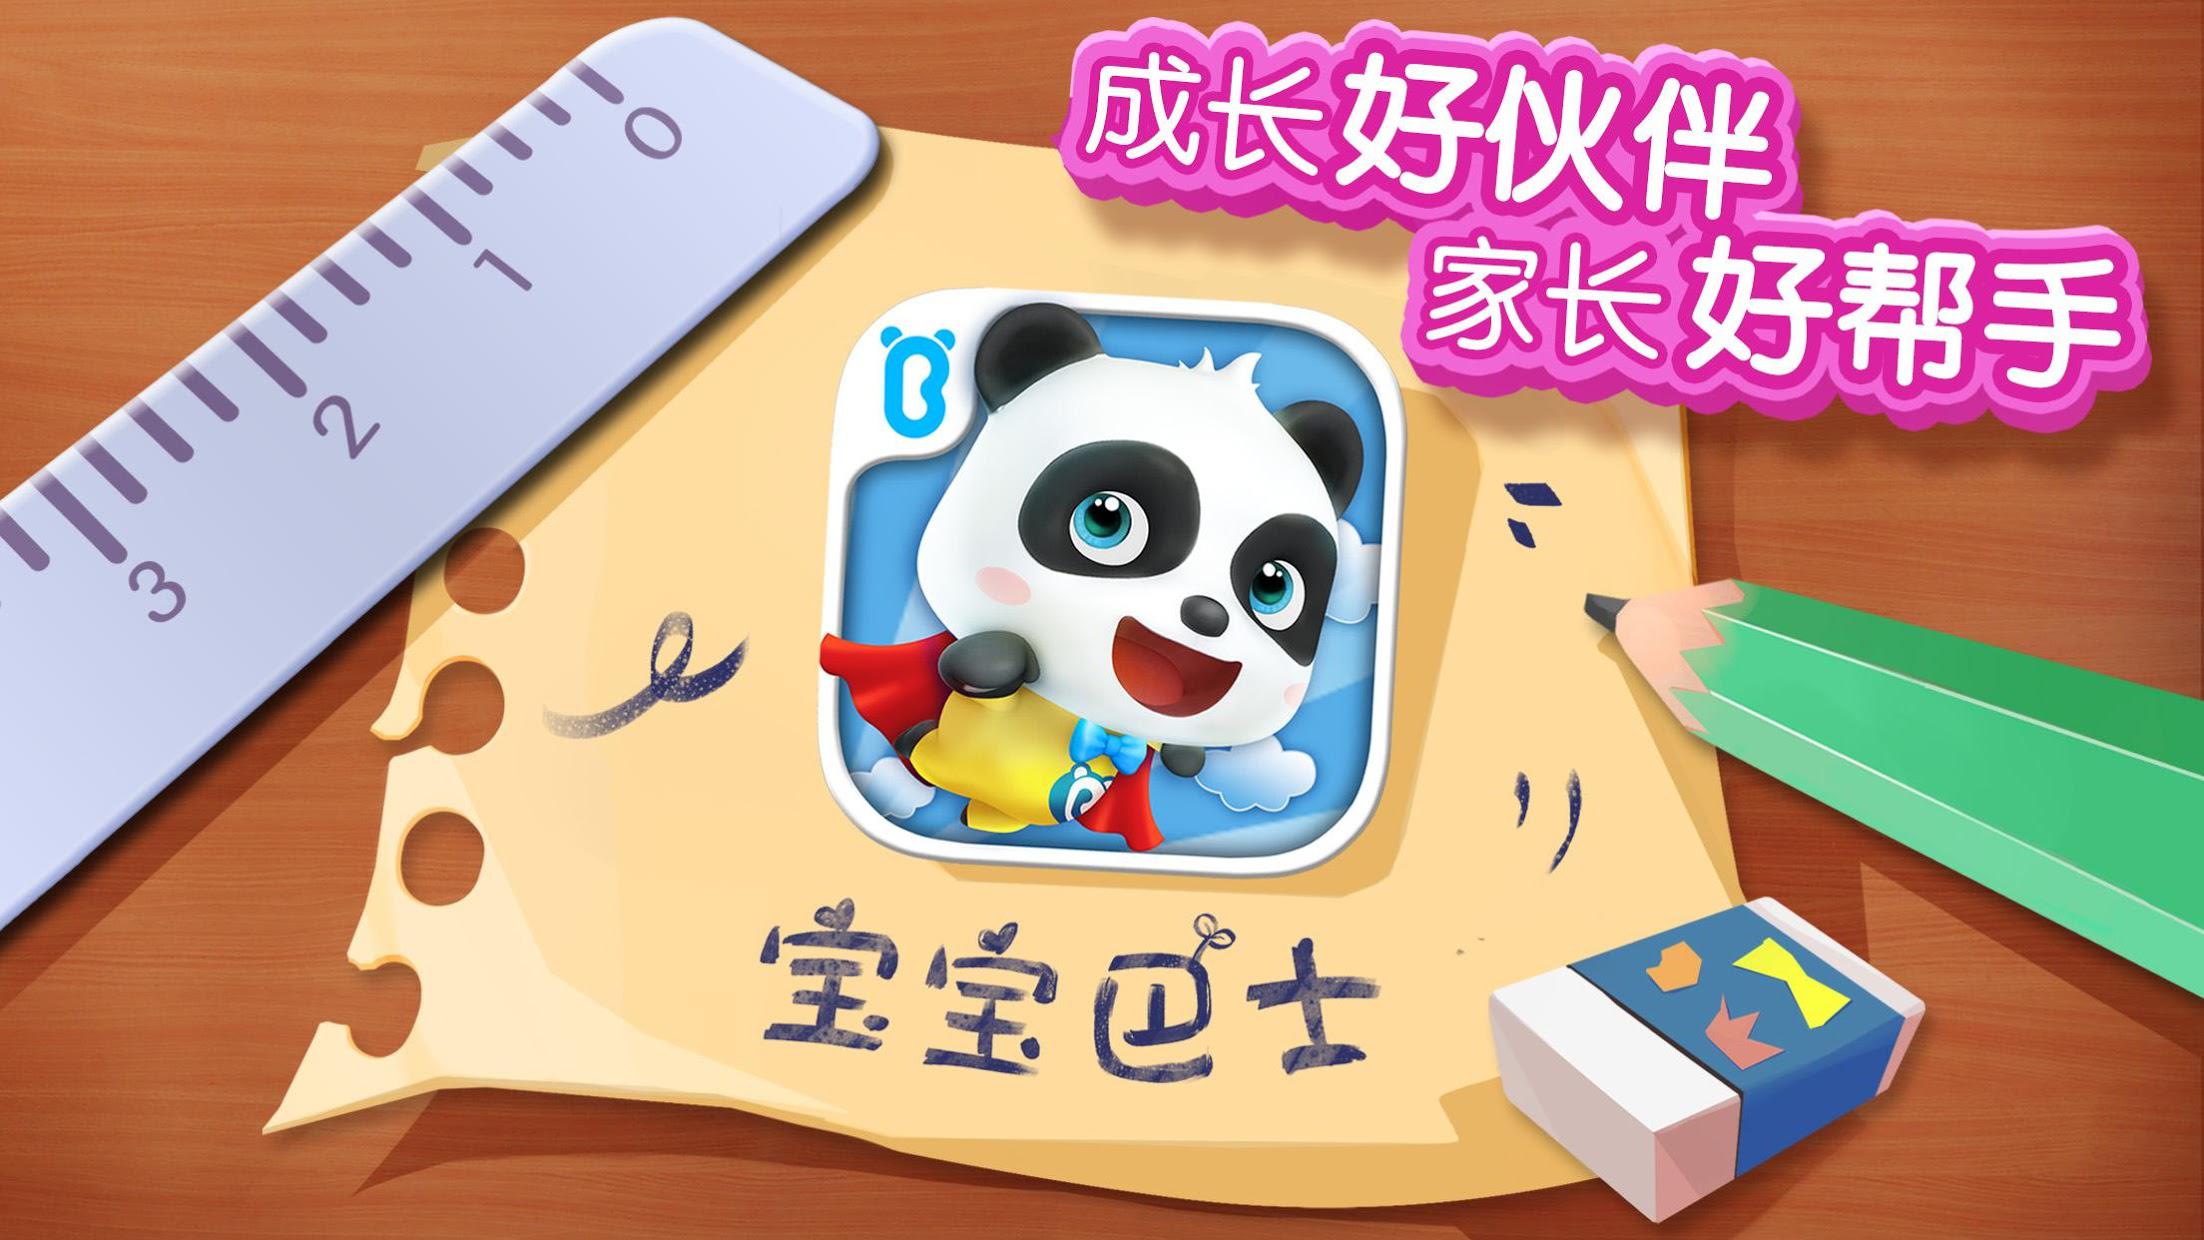 熊猫宝宝水果沙拉 - 幼儿教育游戏_截图_6